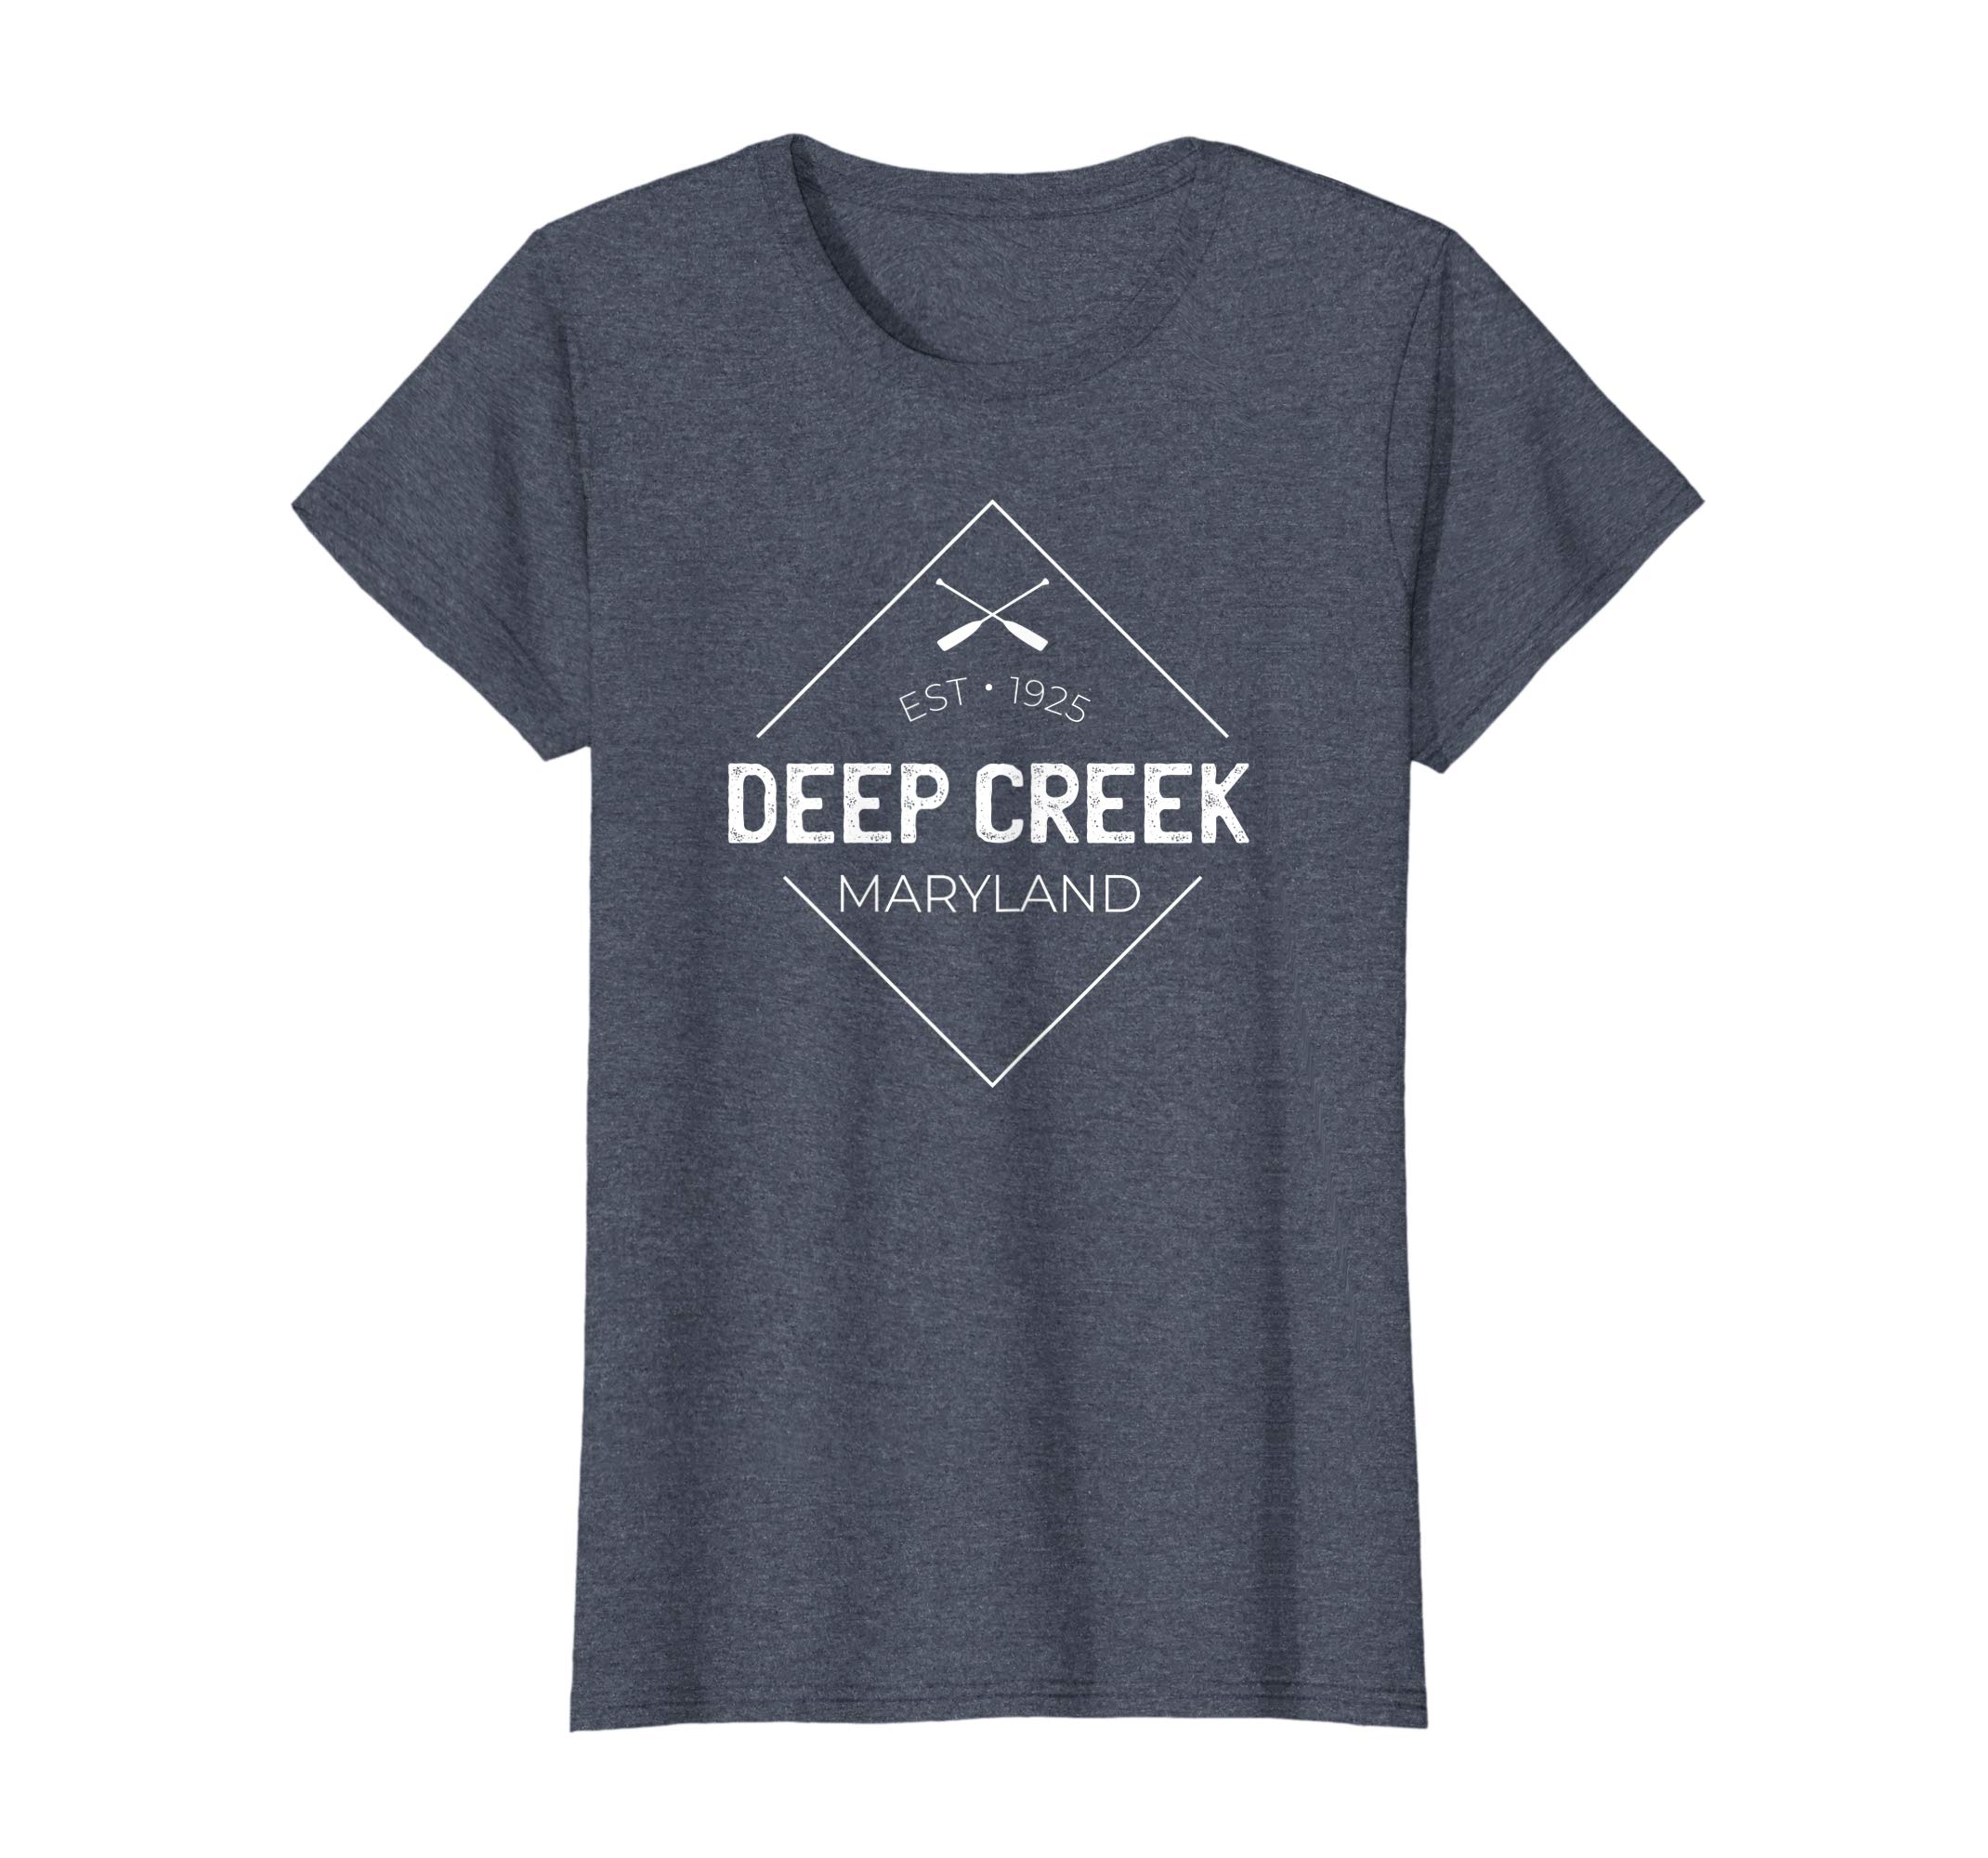 Deep Creek Maryland Tee